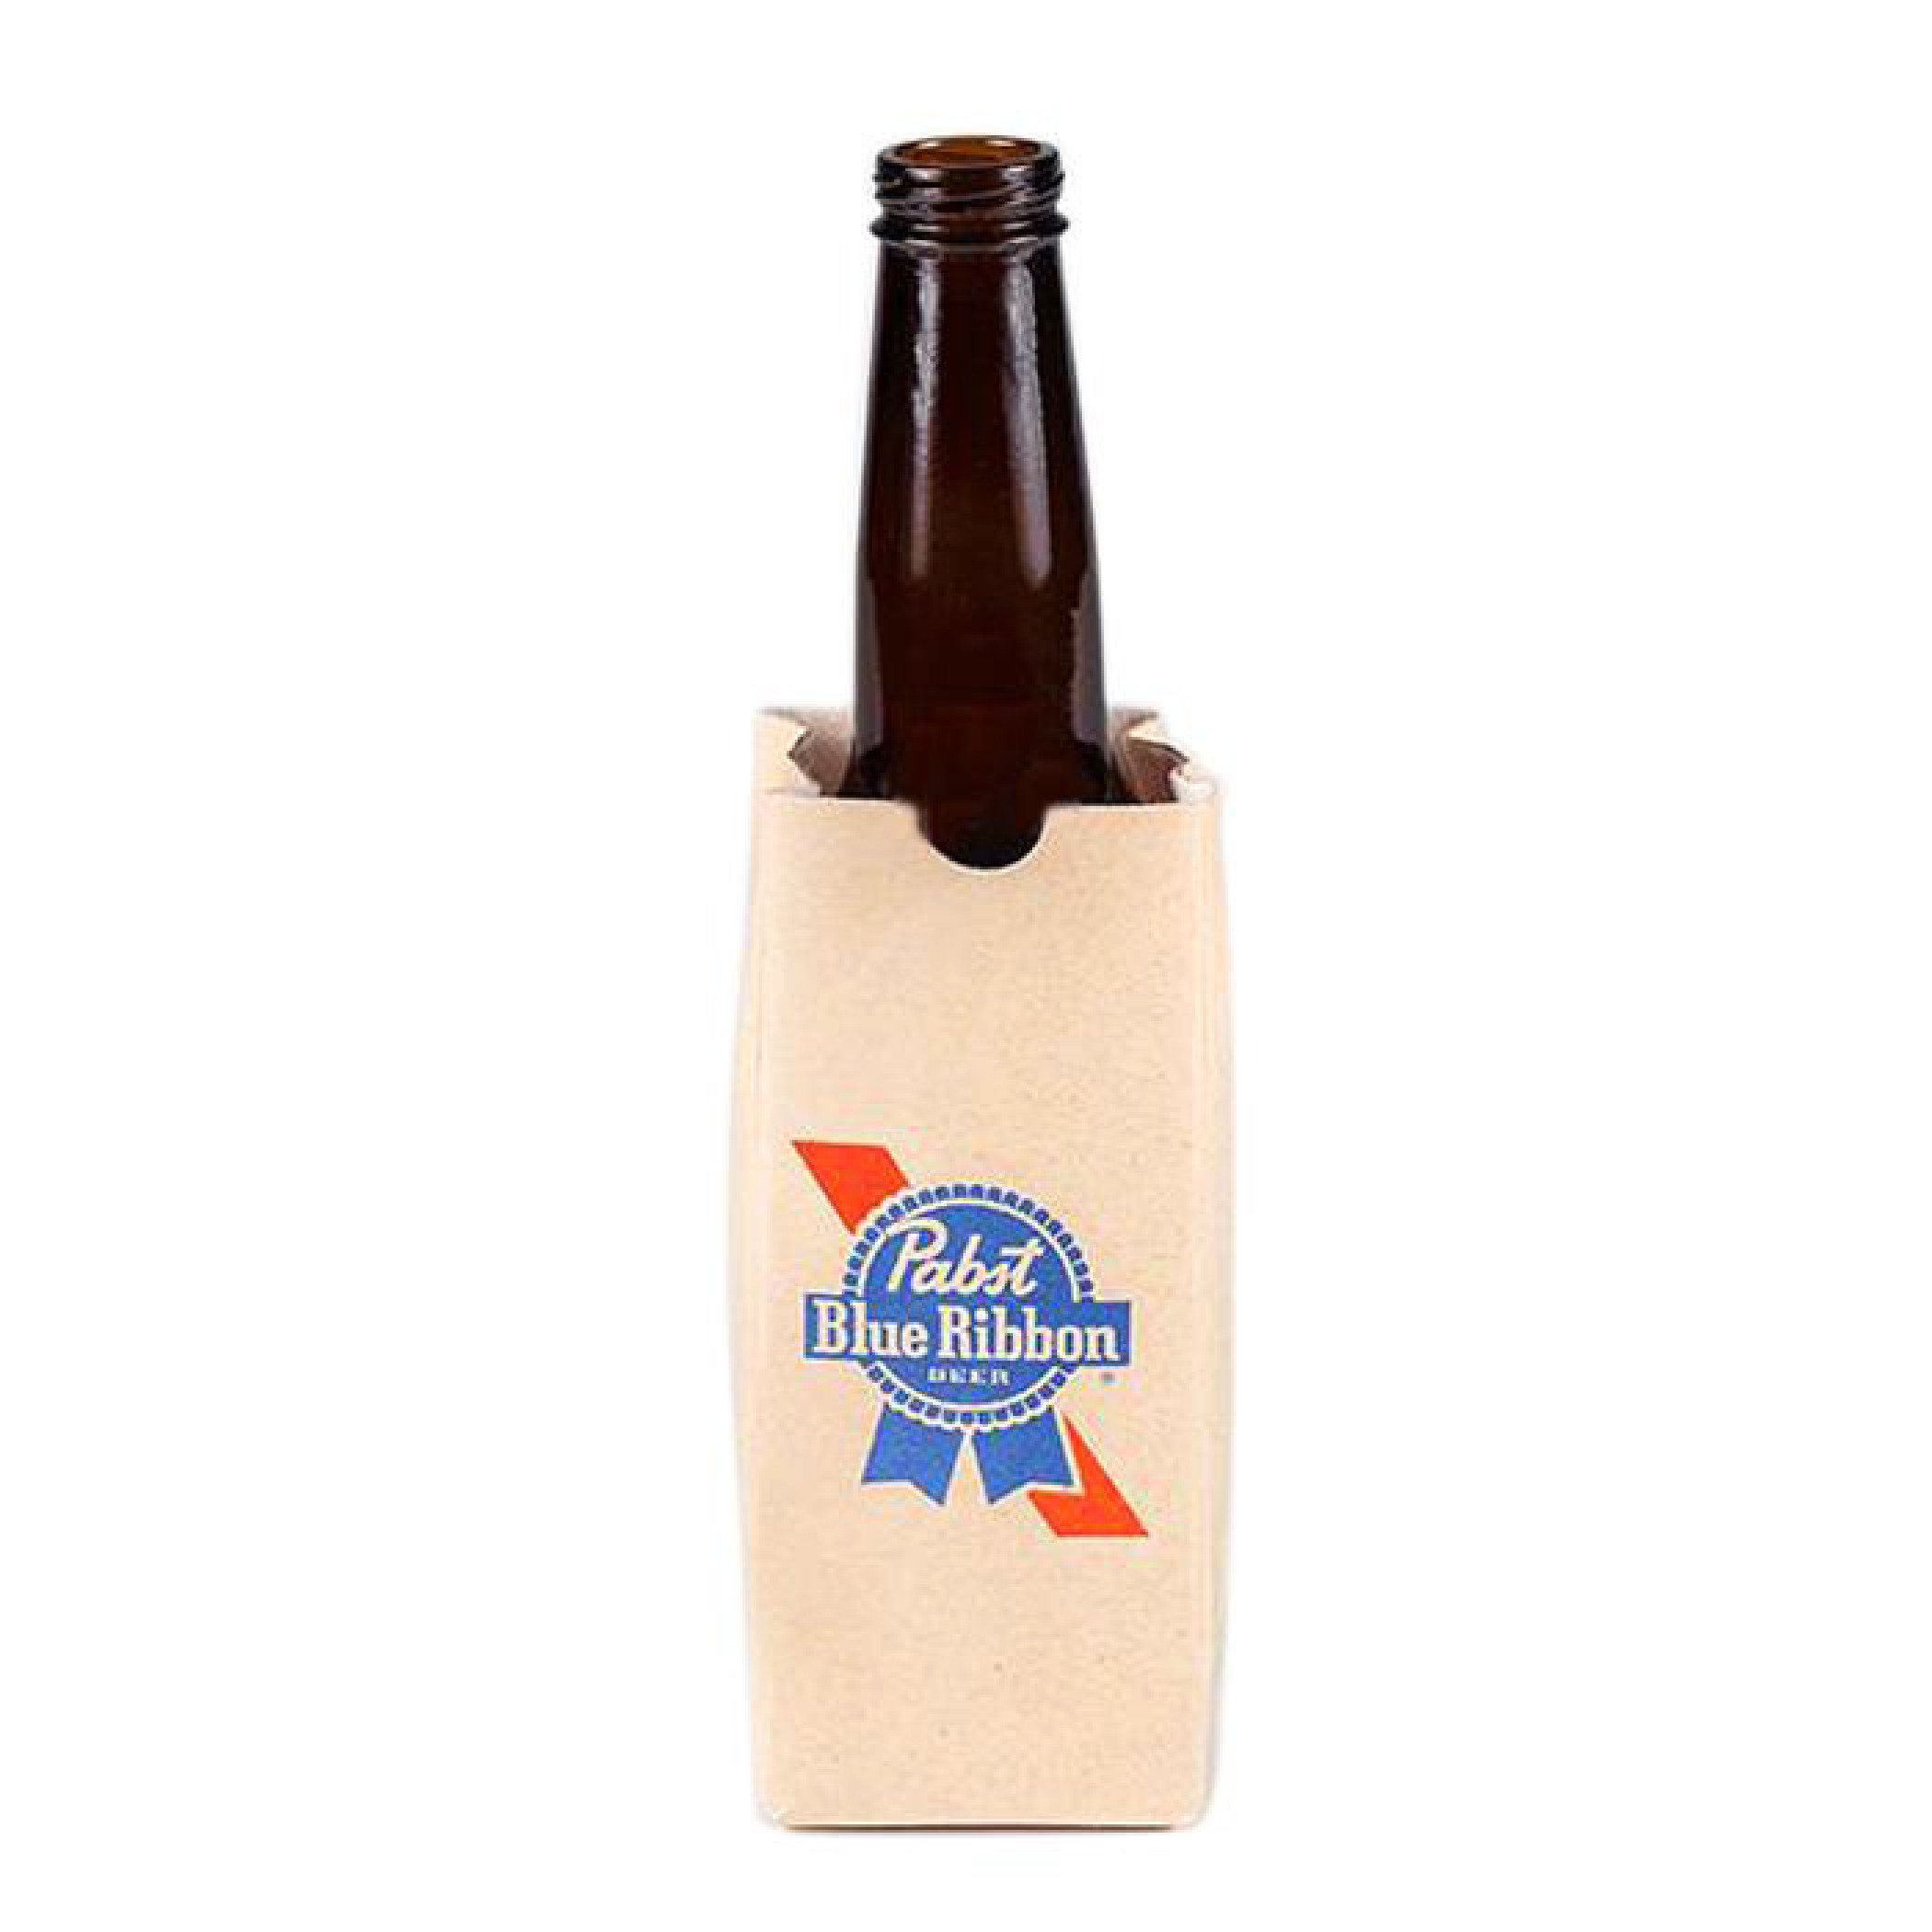 Pabst Blue Ribbon Beer Brown Bag Bottle Holder